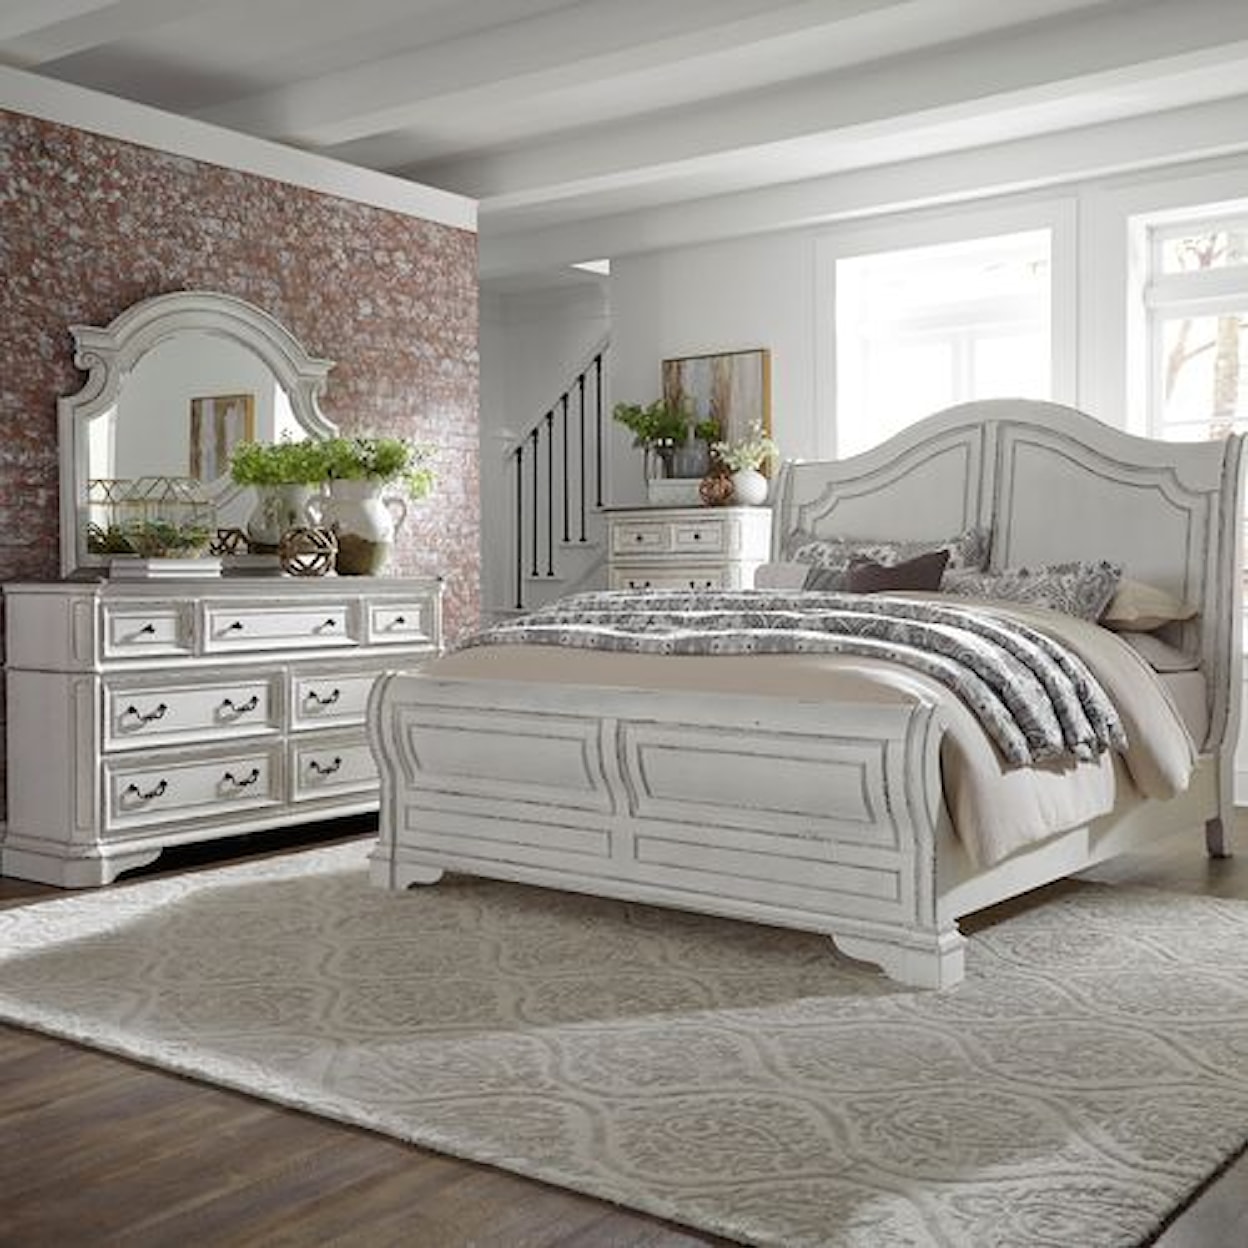 Liberty Furniture Magnolia Manor Queen Bedroom Group